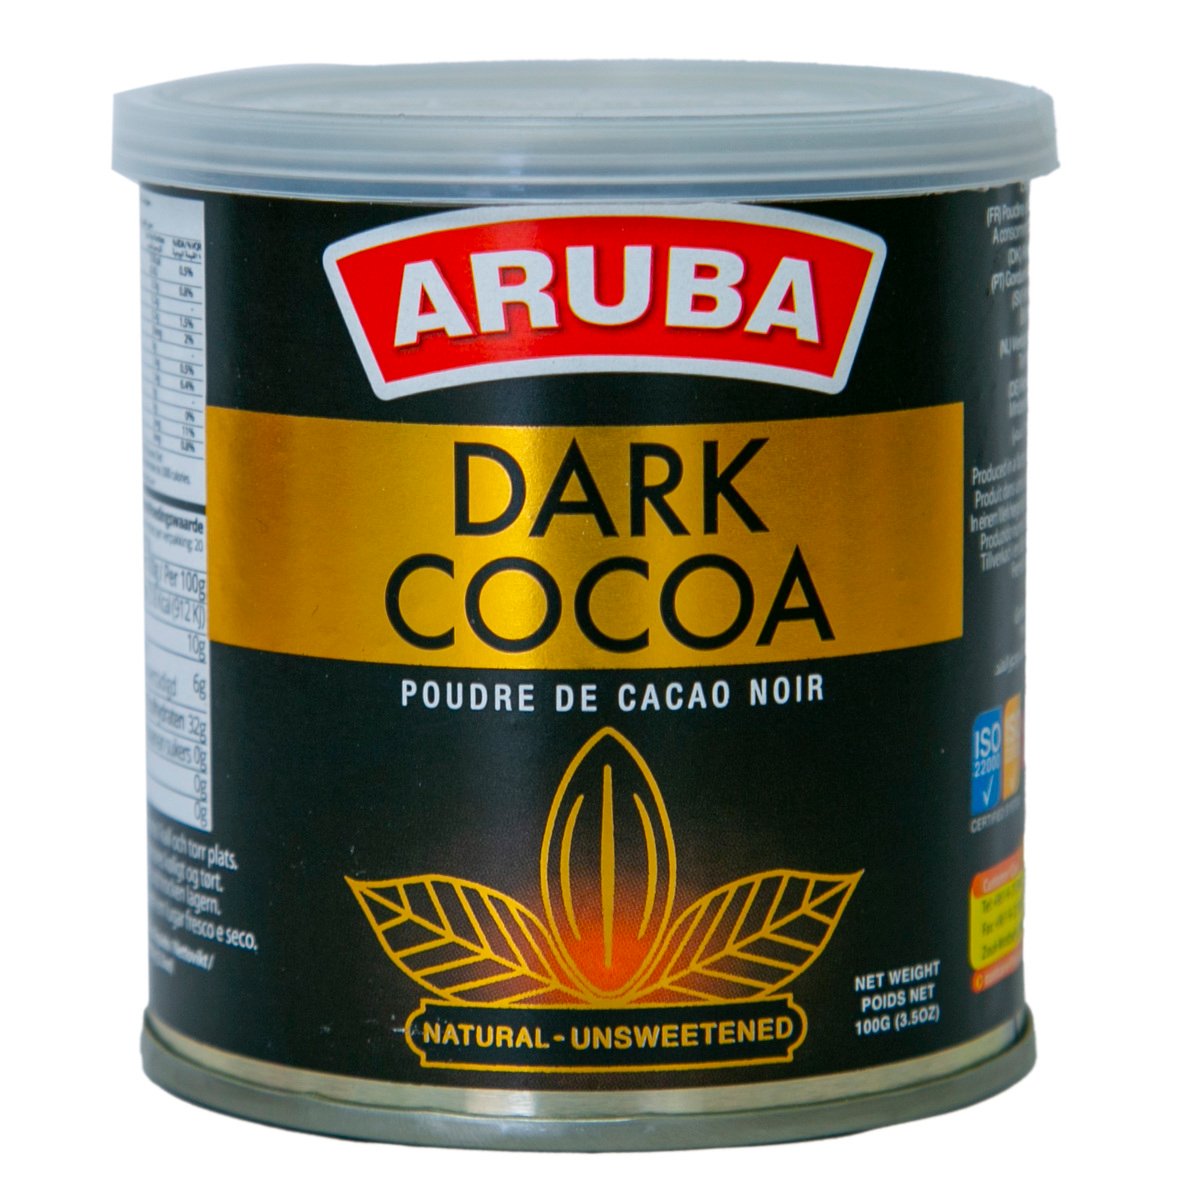 Aruba Dark Cocoa Poudre De Cacao Noir 100g